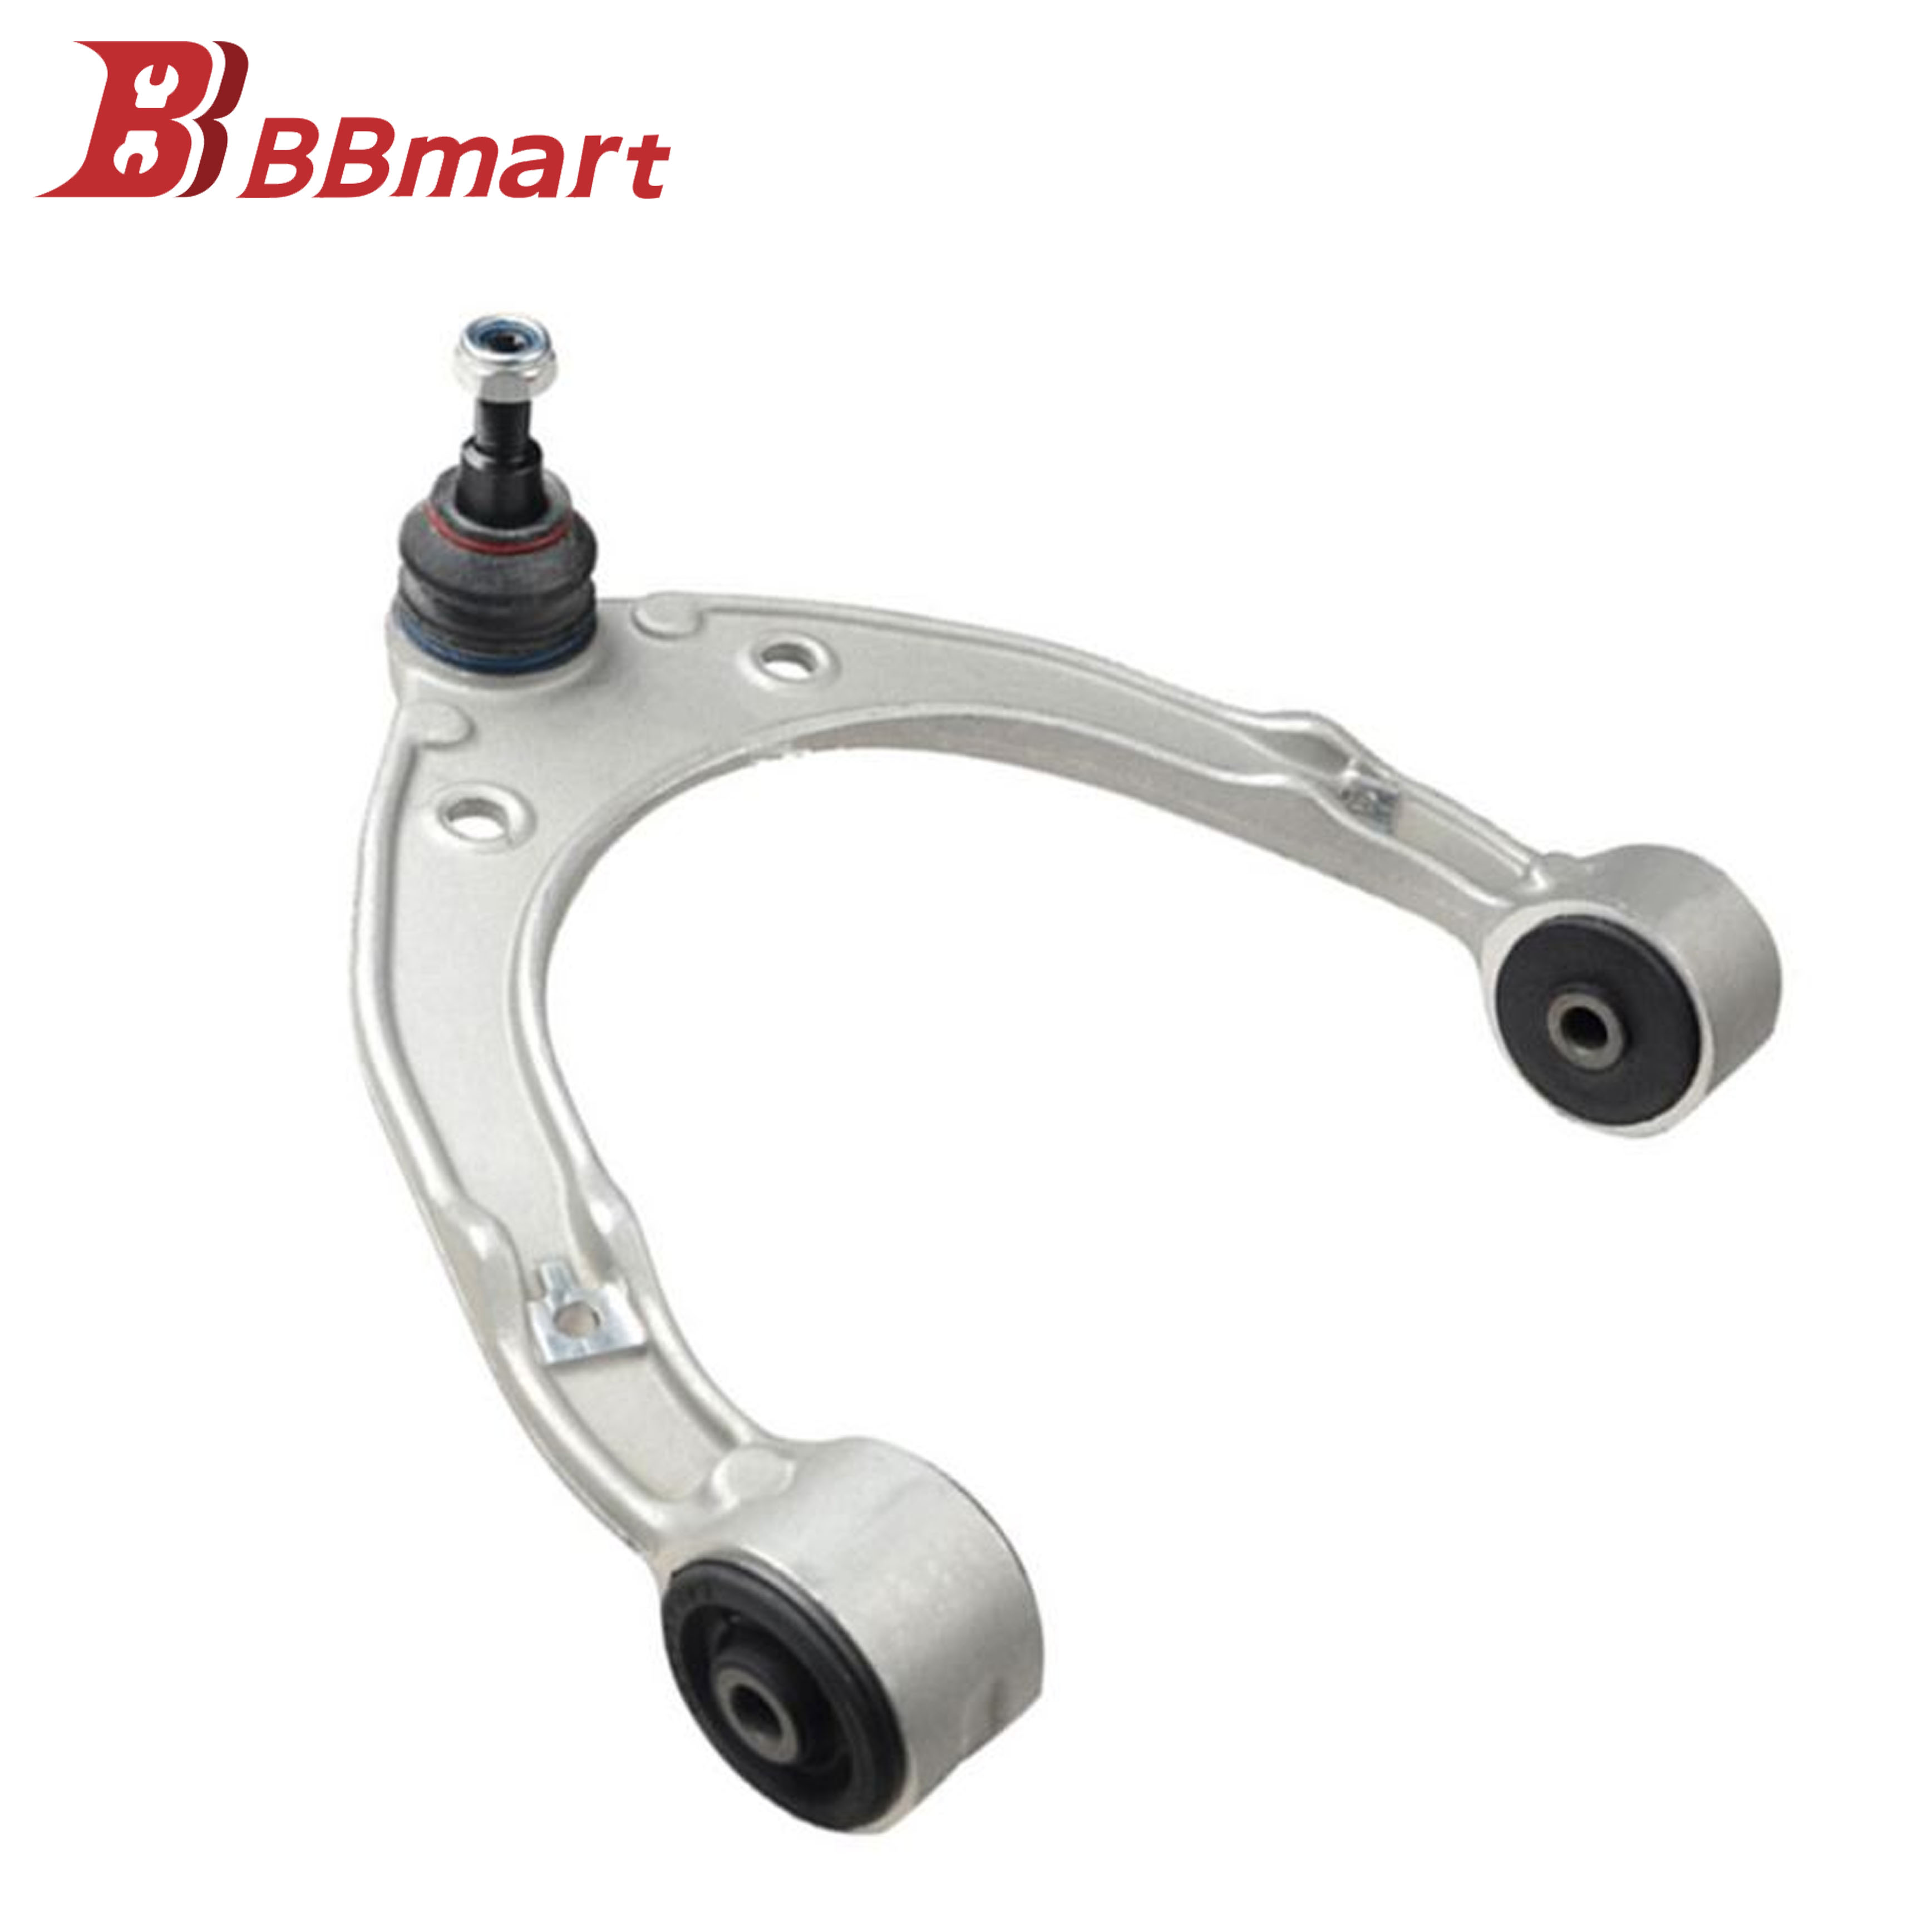 BBmart Auto Parts Upper Control Arm Suspension For VW PORSCHE OE 7P0 407 021 7P0407021